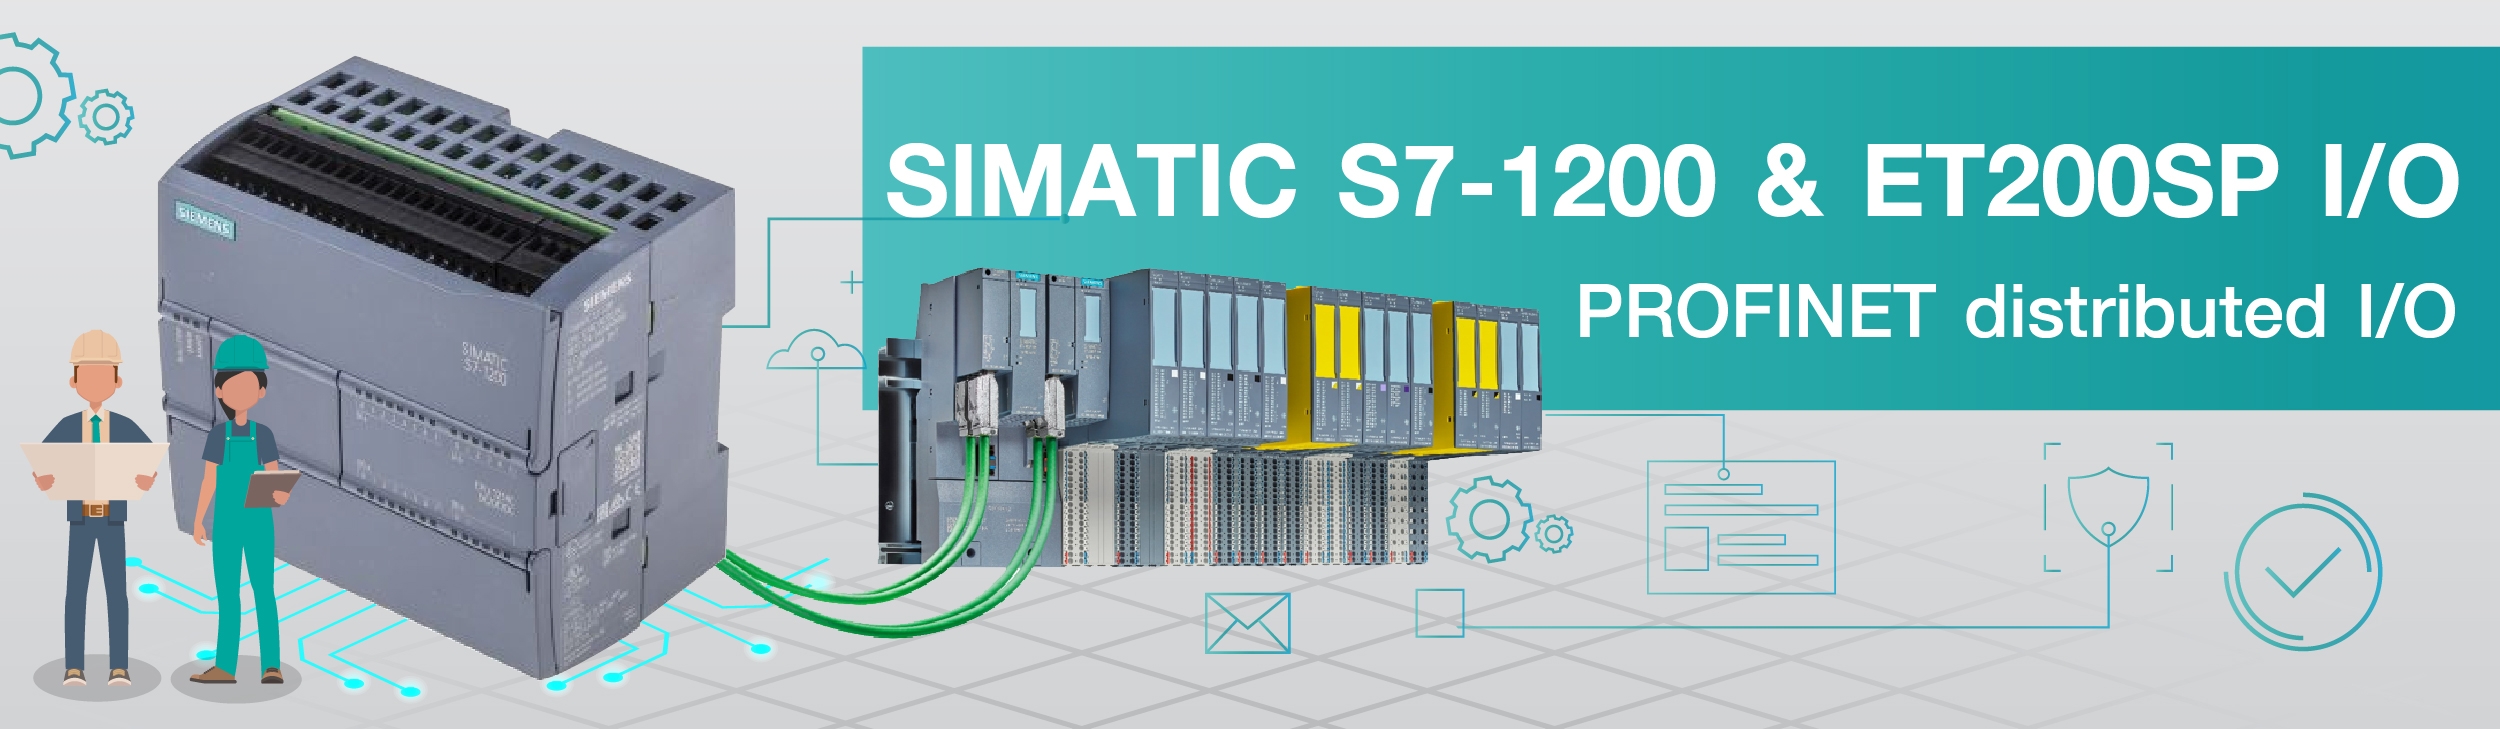 SIMATIC S7-1200 & ET200SP I/O